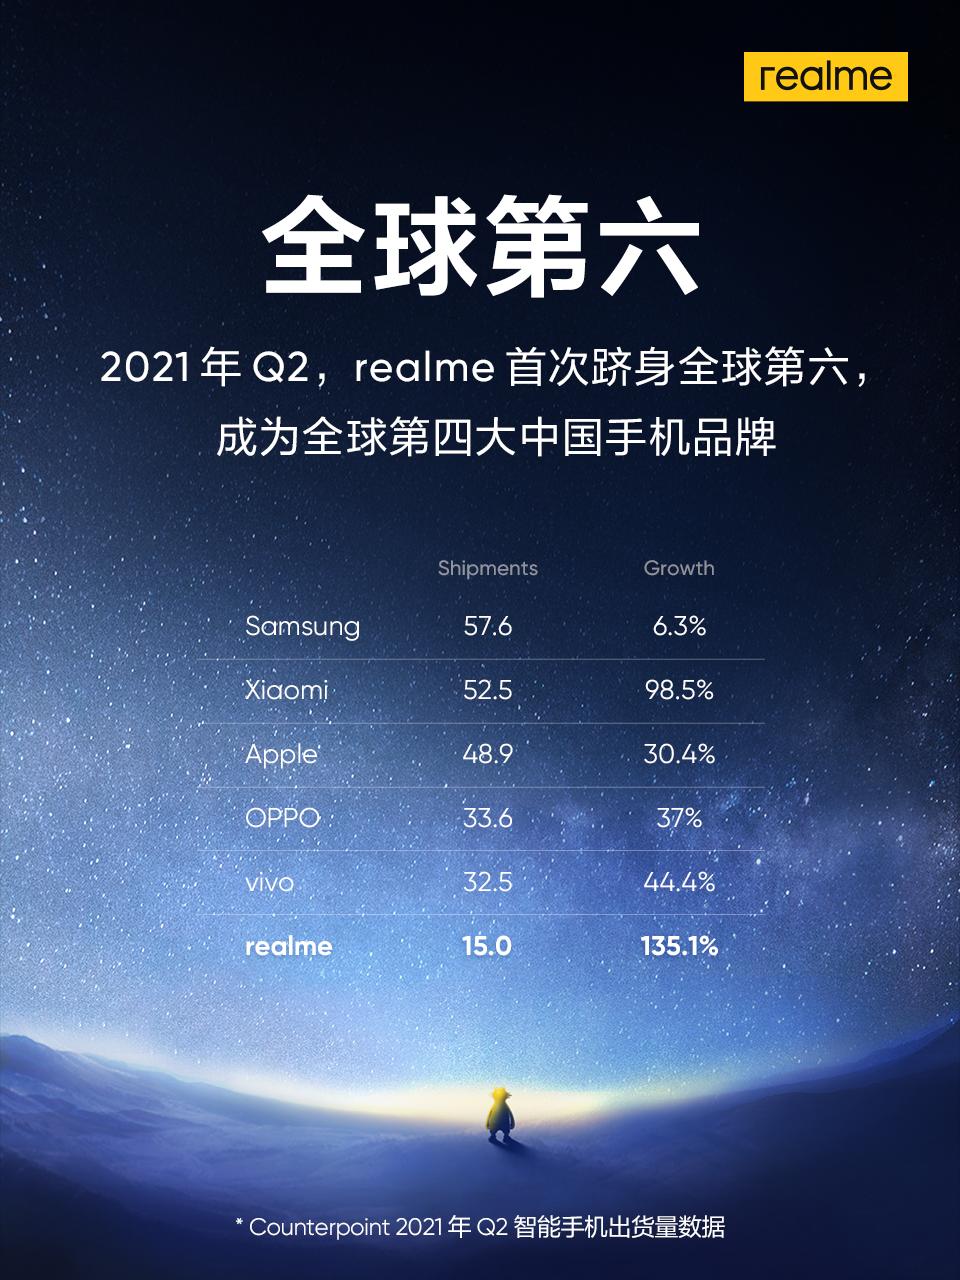 首次跻身全球第六，realme成为全球第四大中国手机品牌